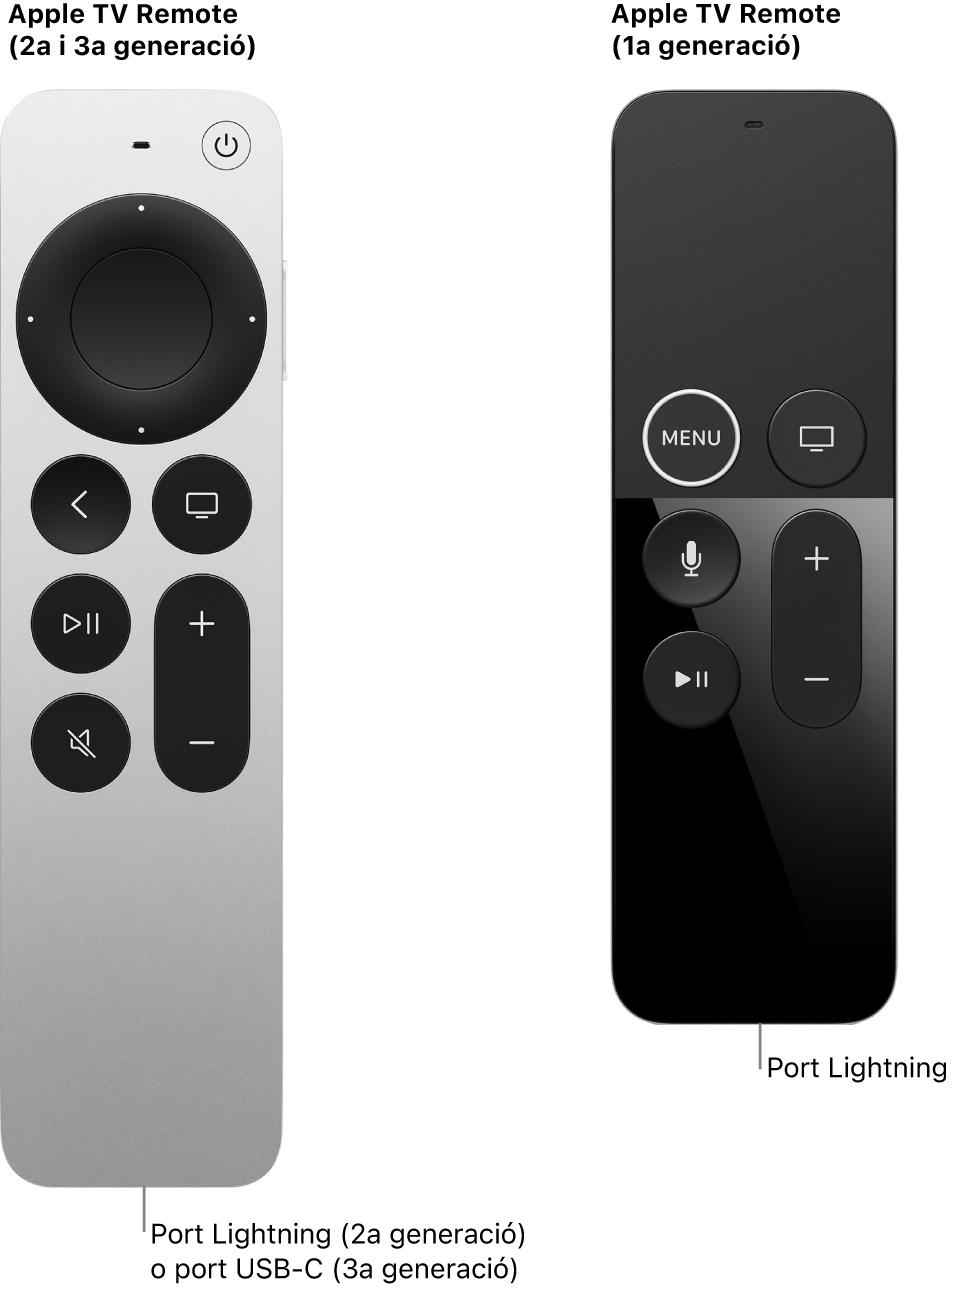 Imatge del comandament de l’Apple TV (2a generació) i del comandament de l’Apple TV (1a generació) en què s’indica on és el port Lightning.